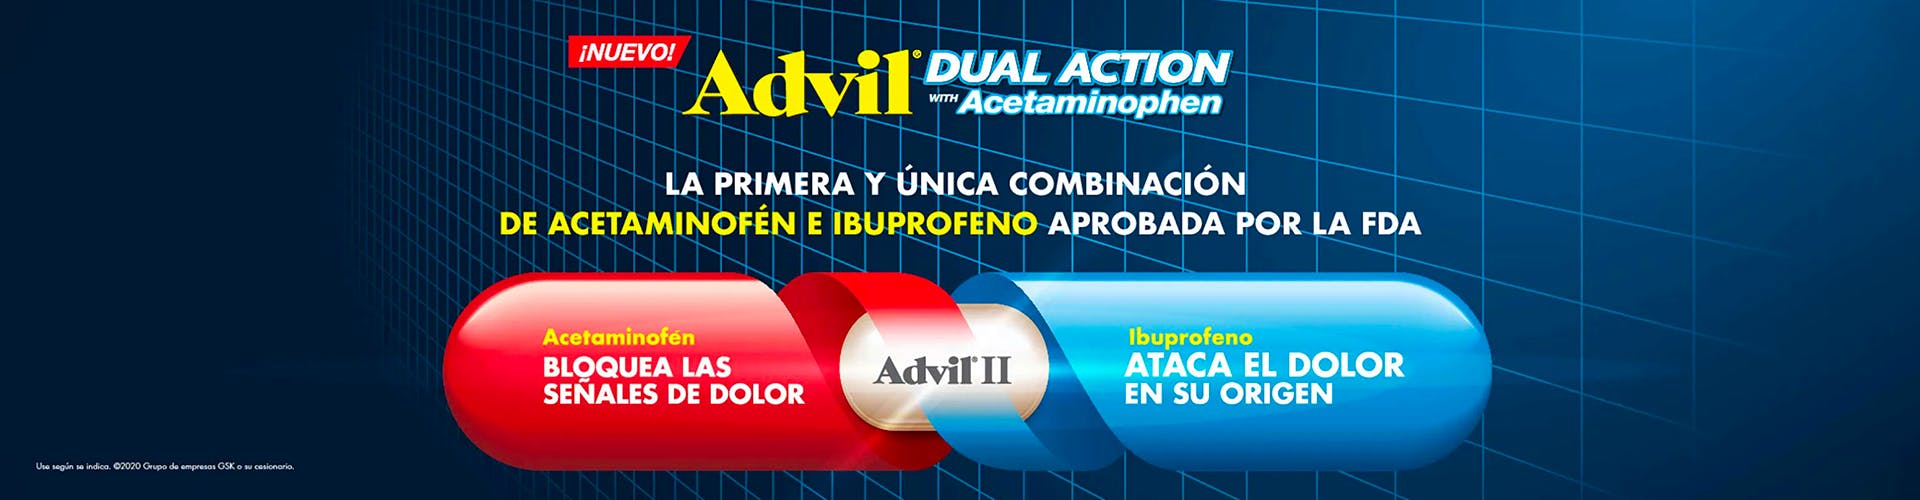 rojo y azul de Advil Dual Action con acetaminofén e ibuprofeno sobre el fondo azul marino